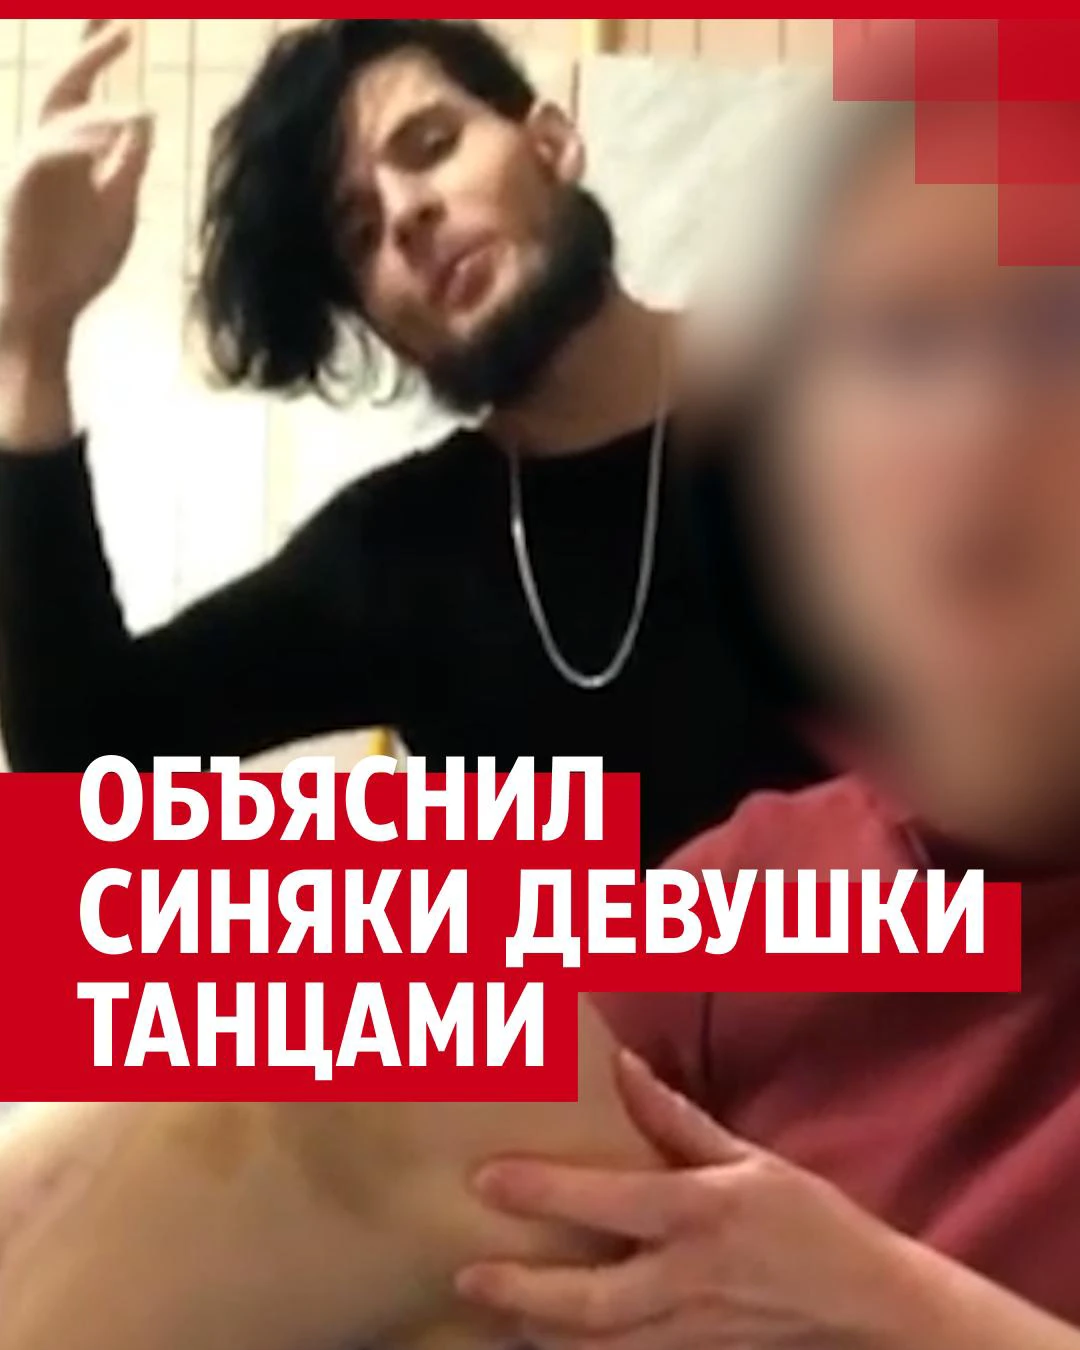 Удушение vkontakte порно | смотреть онлайн порно роликов